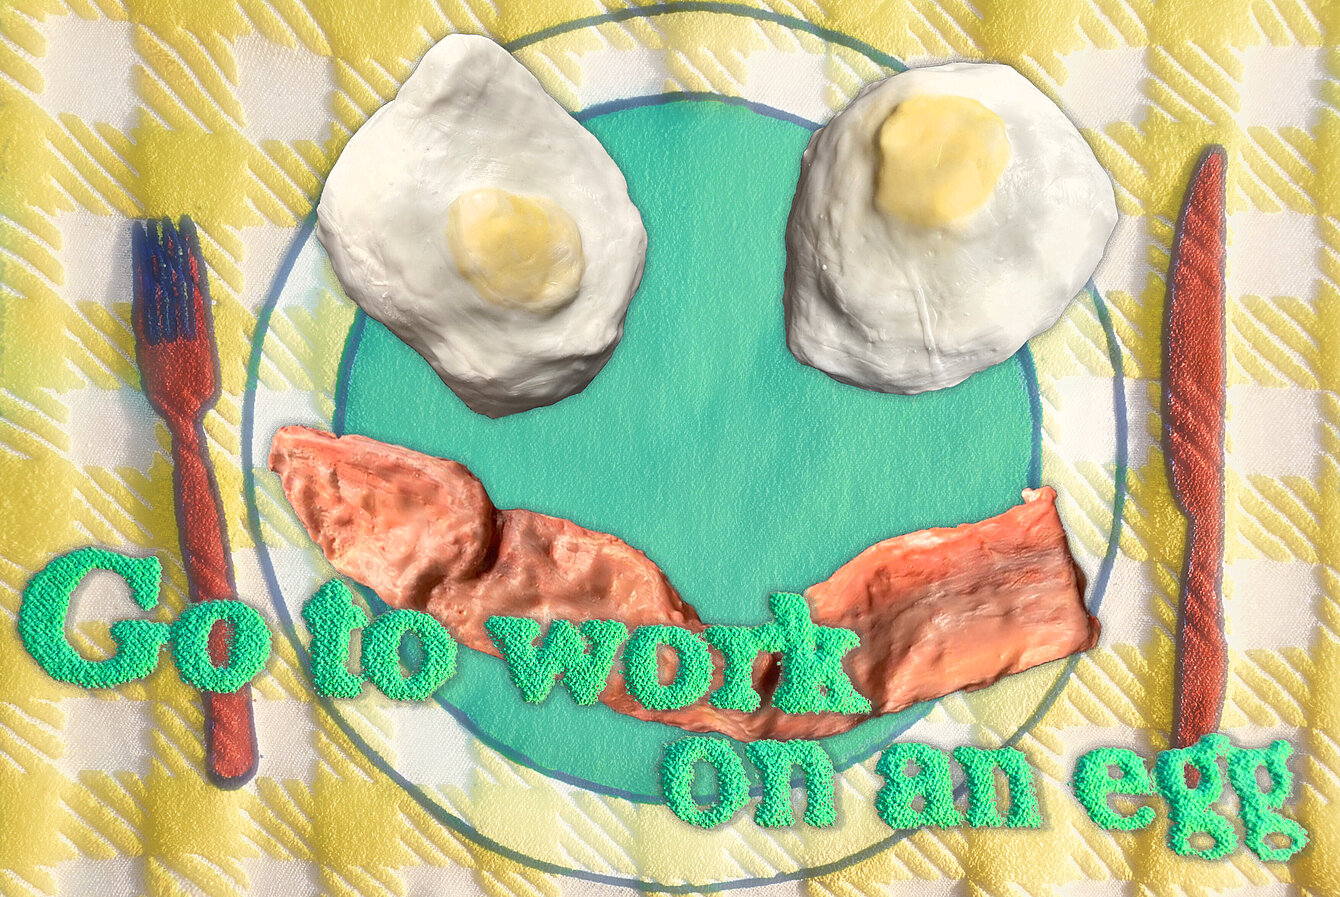 Ein grüner Schriftzug "go to work on an egg" vor zwei Spiegeleier- und Speckskulpturen, die auf einem Teller aus Stoff liegen. Daneben eine Gabel und ein Messer aus Stoff.